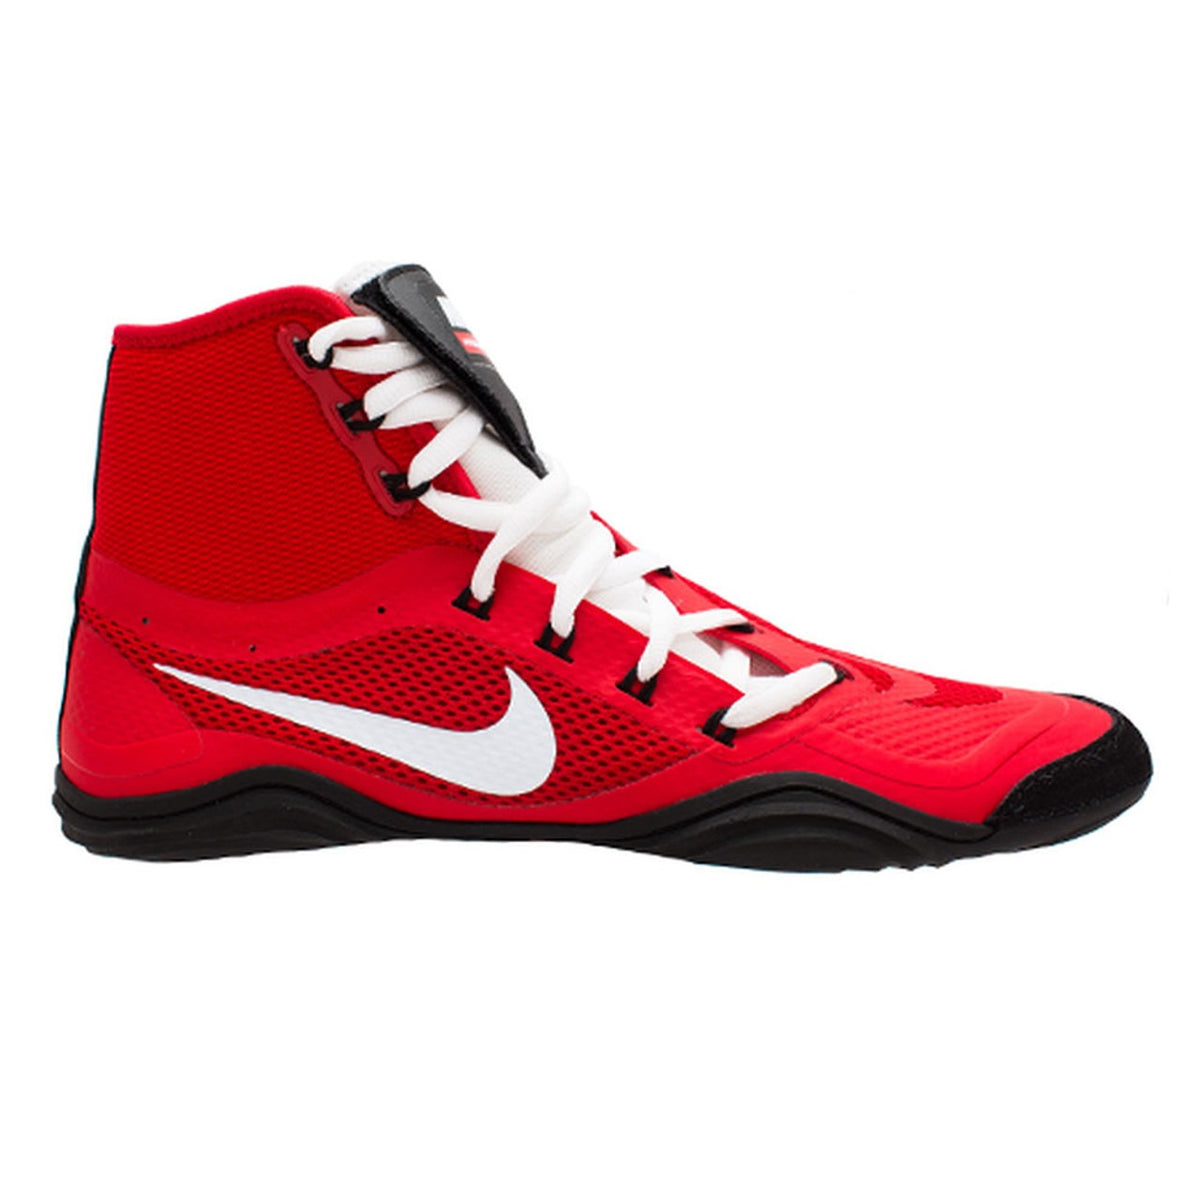 Zapatos de lucha Nike HYPERSWEEP LE. El zapato de lucha profesional para todos los luchadores ambiciosos. Con la tecnología más avanzada, Nike Hypersweep te brinda mucho agarre en la alfombra de lucha. En entrenamiento y competición. Aquí en color rojo.